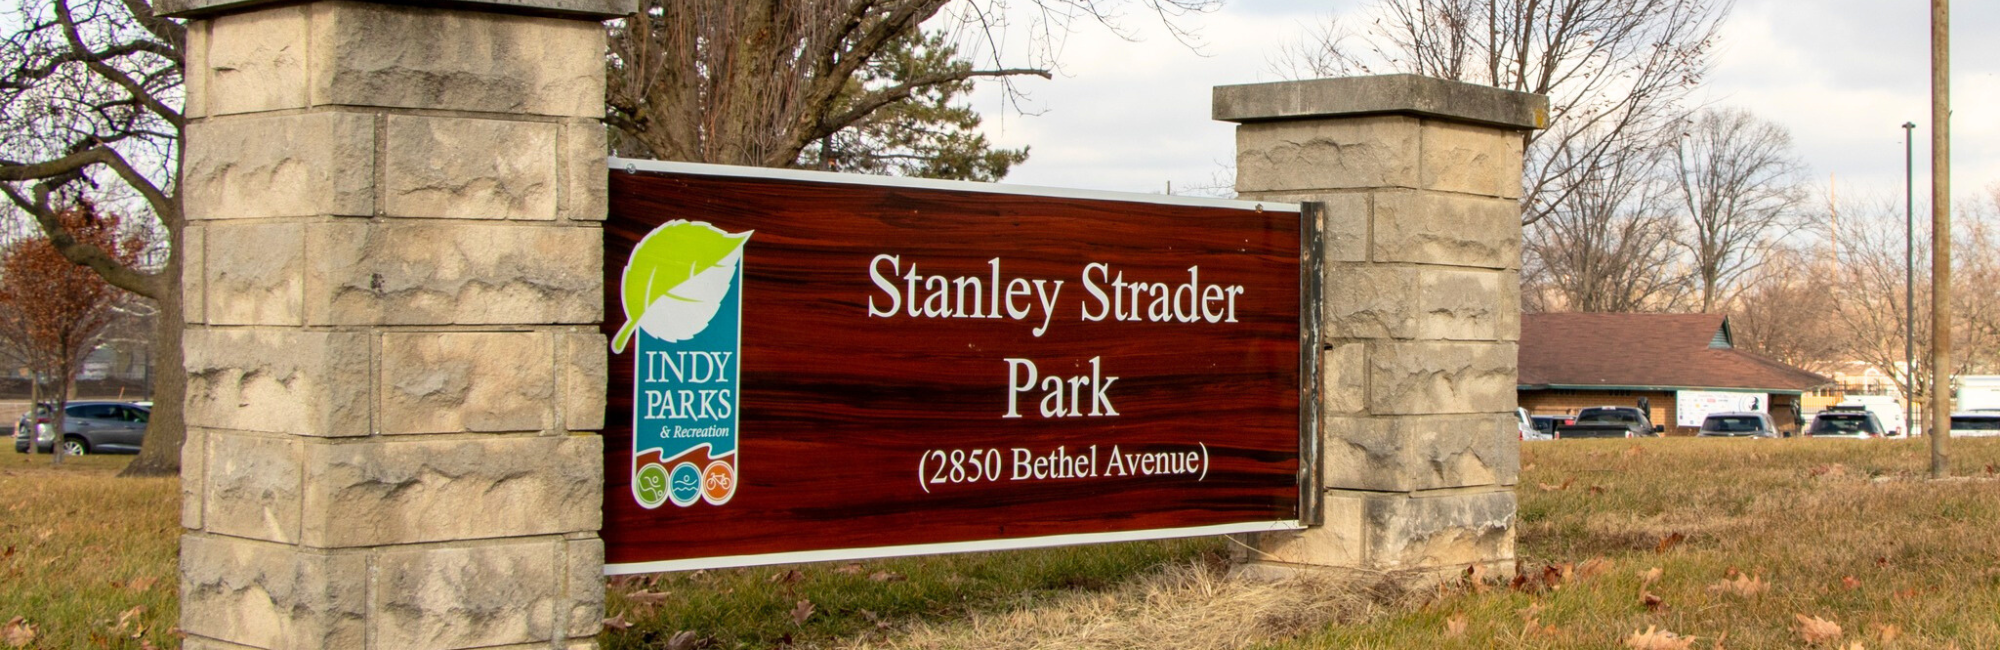 Stanley Strader Park Family Center